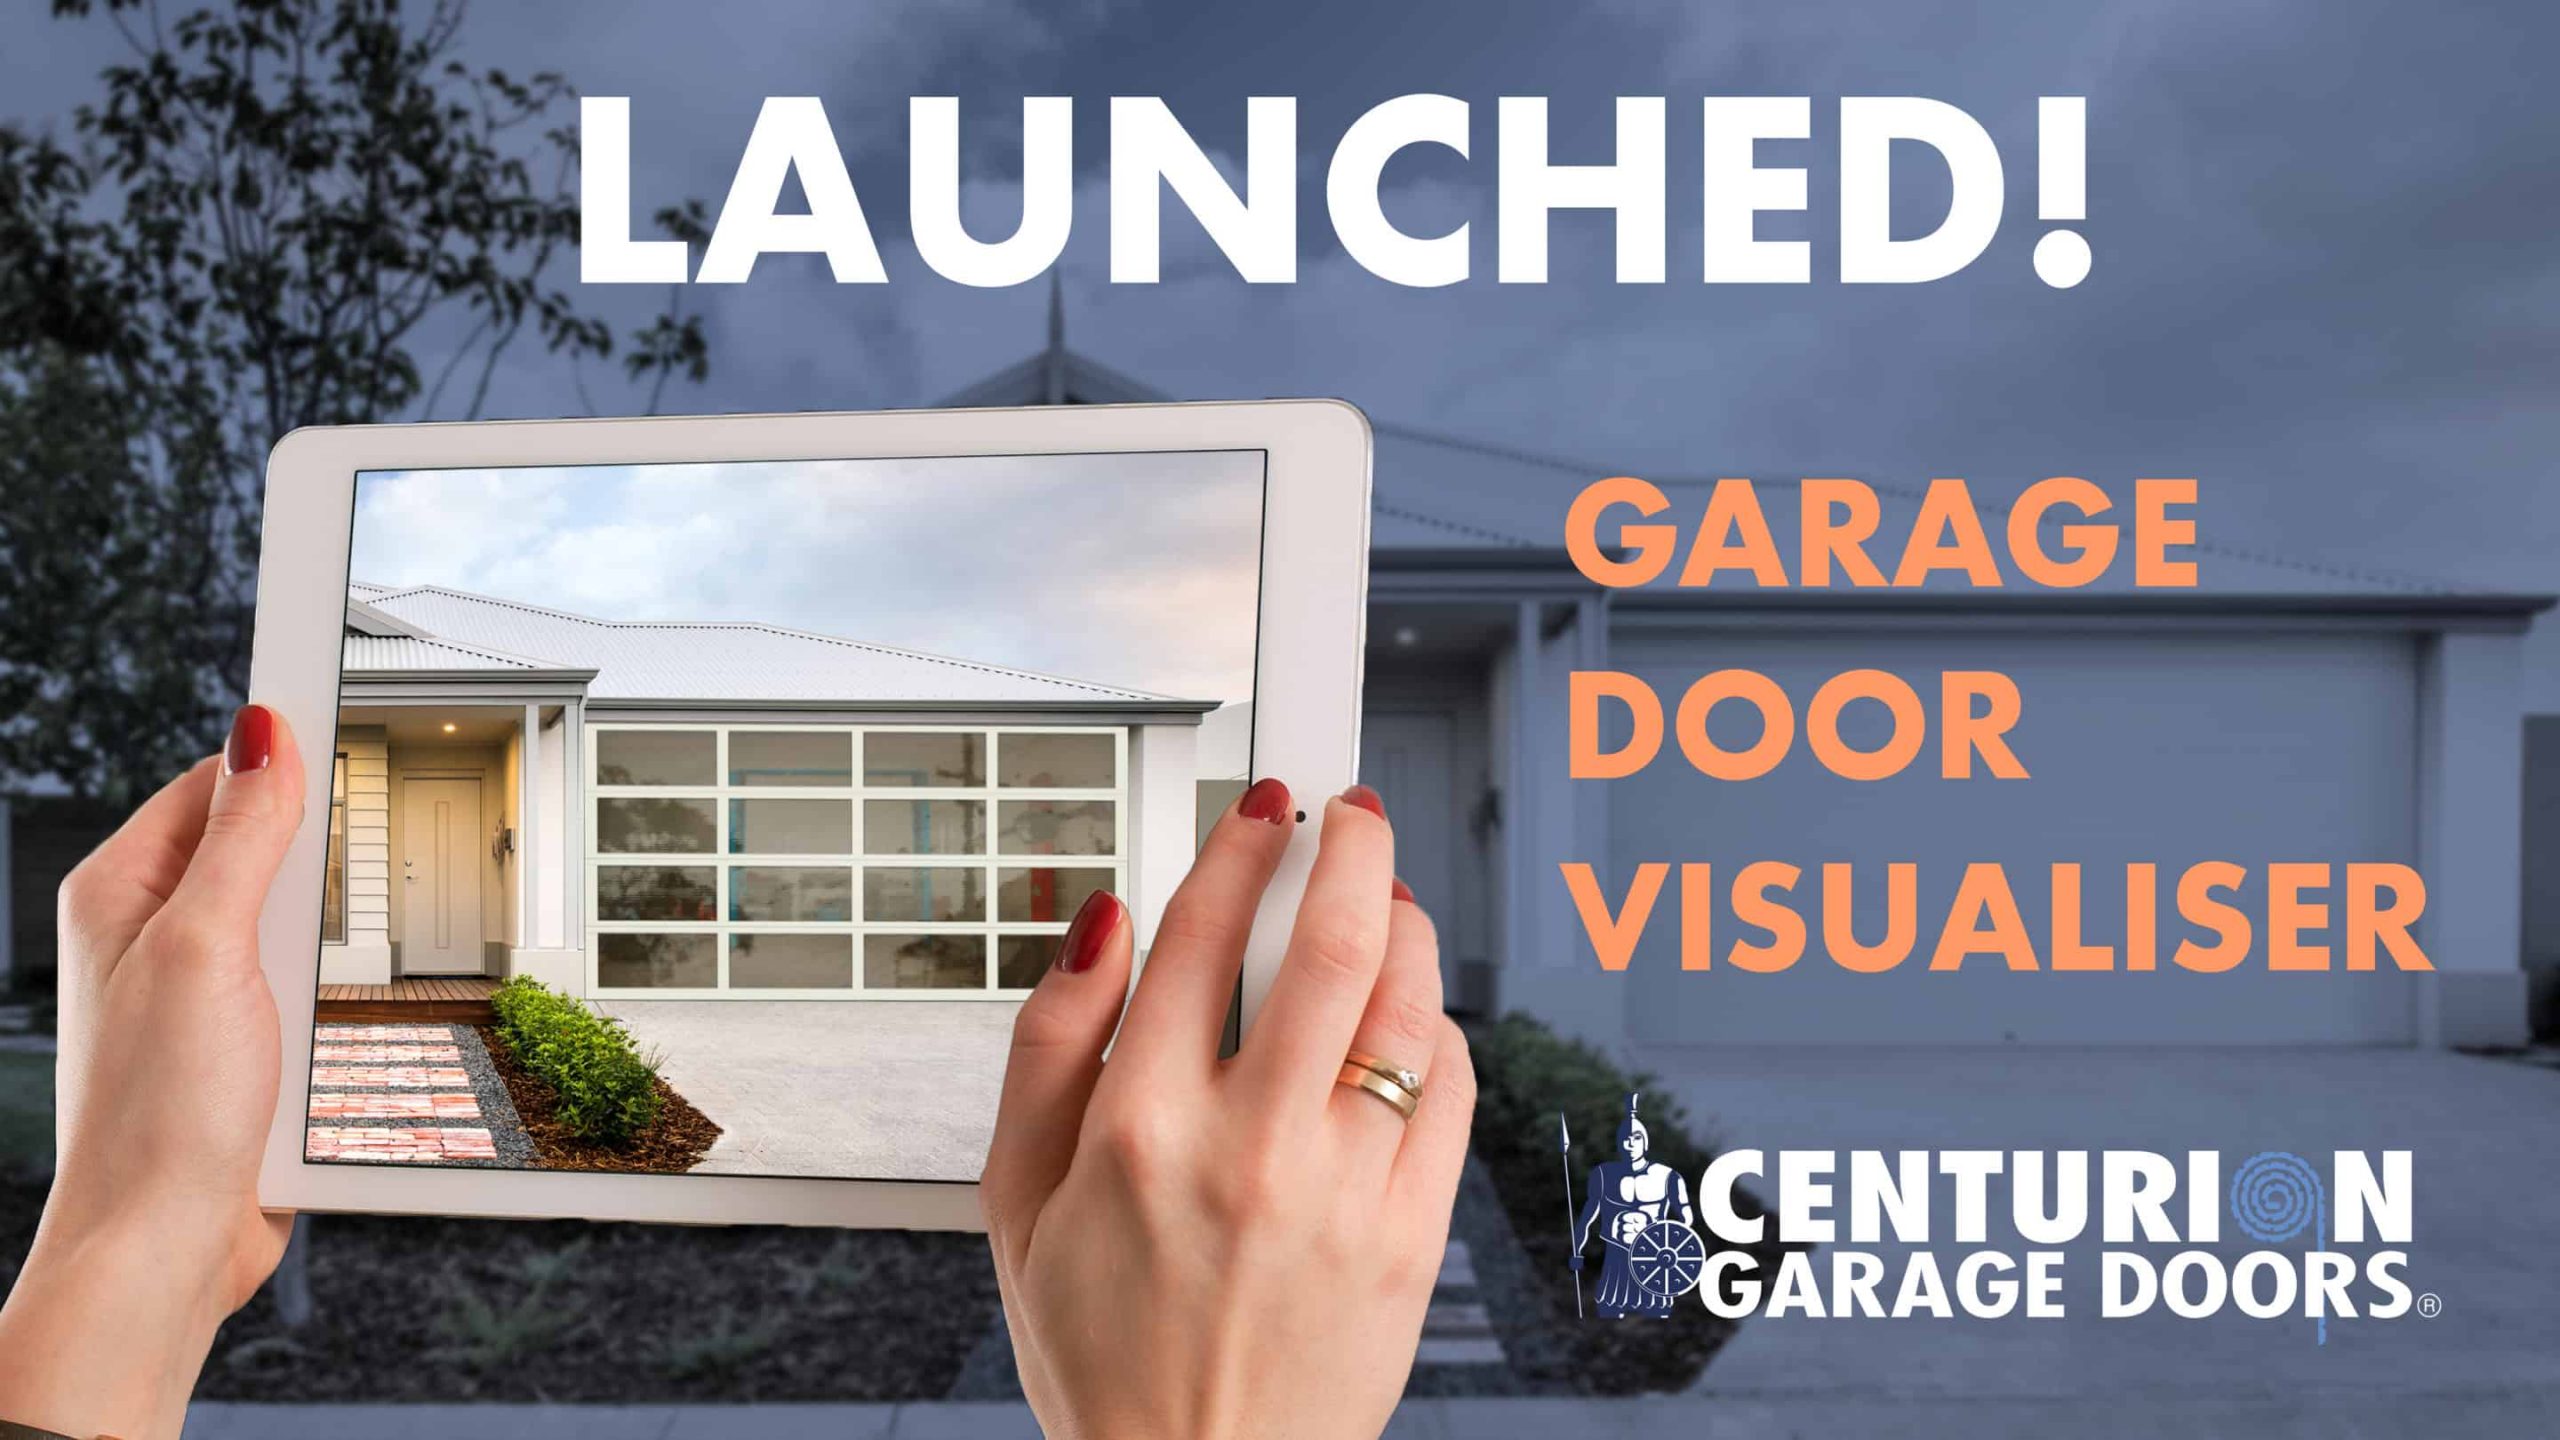 Centurion Garage Door's has launched their new garage door visualiser tool